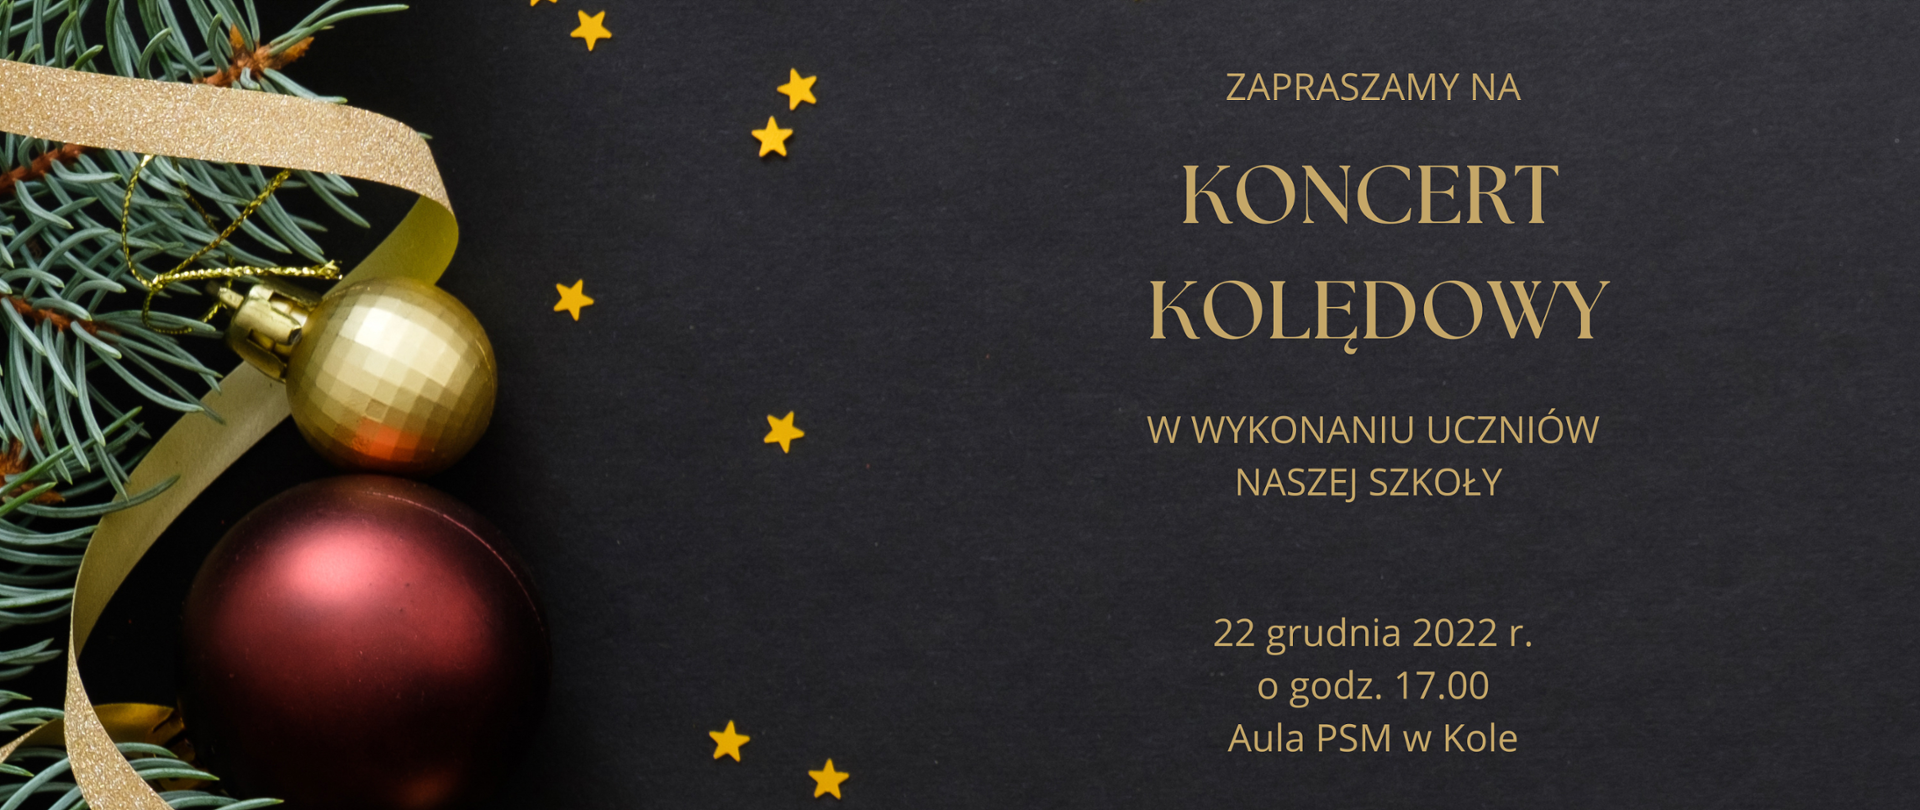 plakat - na czarnym tle złotymi literami napis zapraszamy na koncert kolędowy w wykonaniu uczniów naszej szkoły 22 grudnia 2022 o godzinie 17,00 Aula PSM w Kole